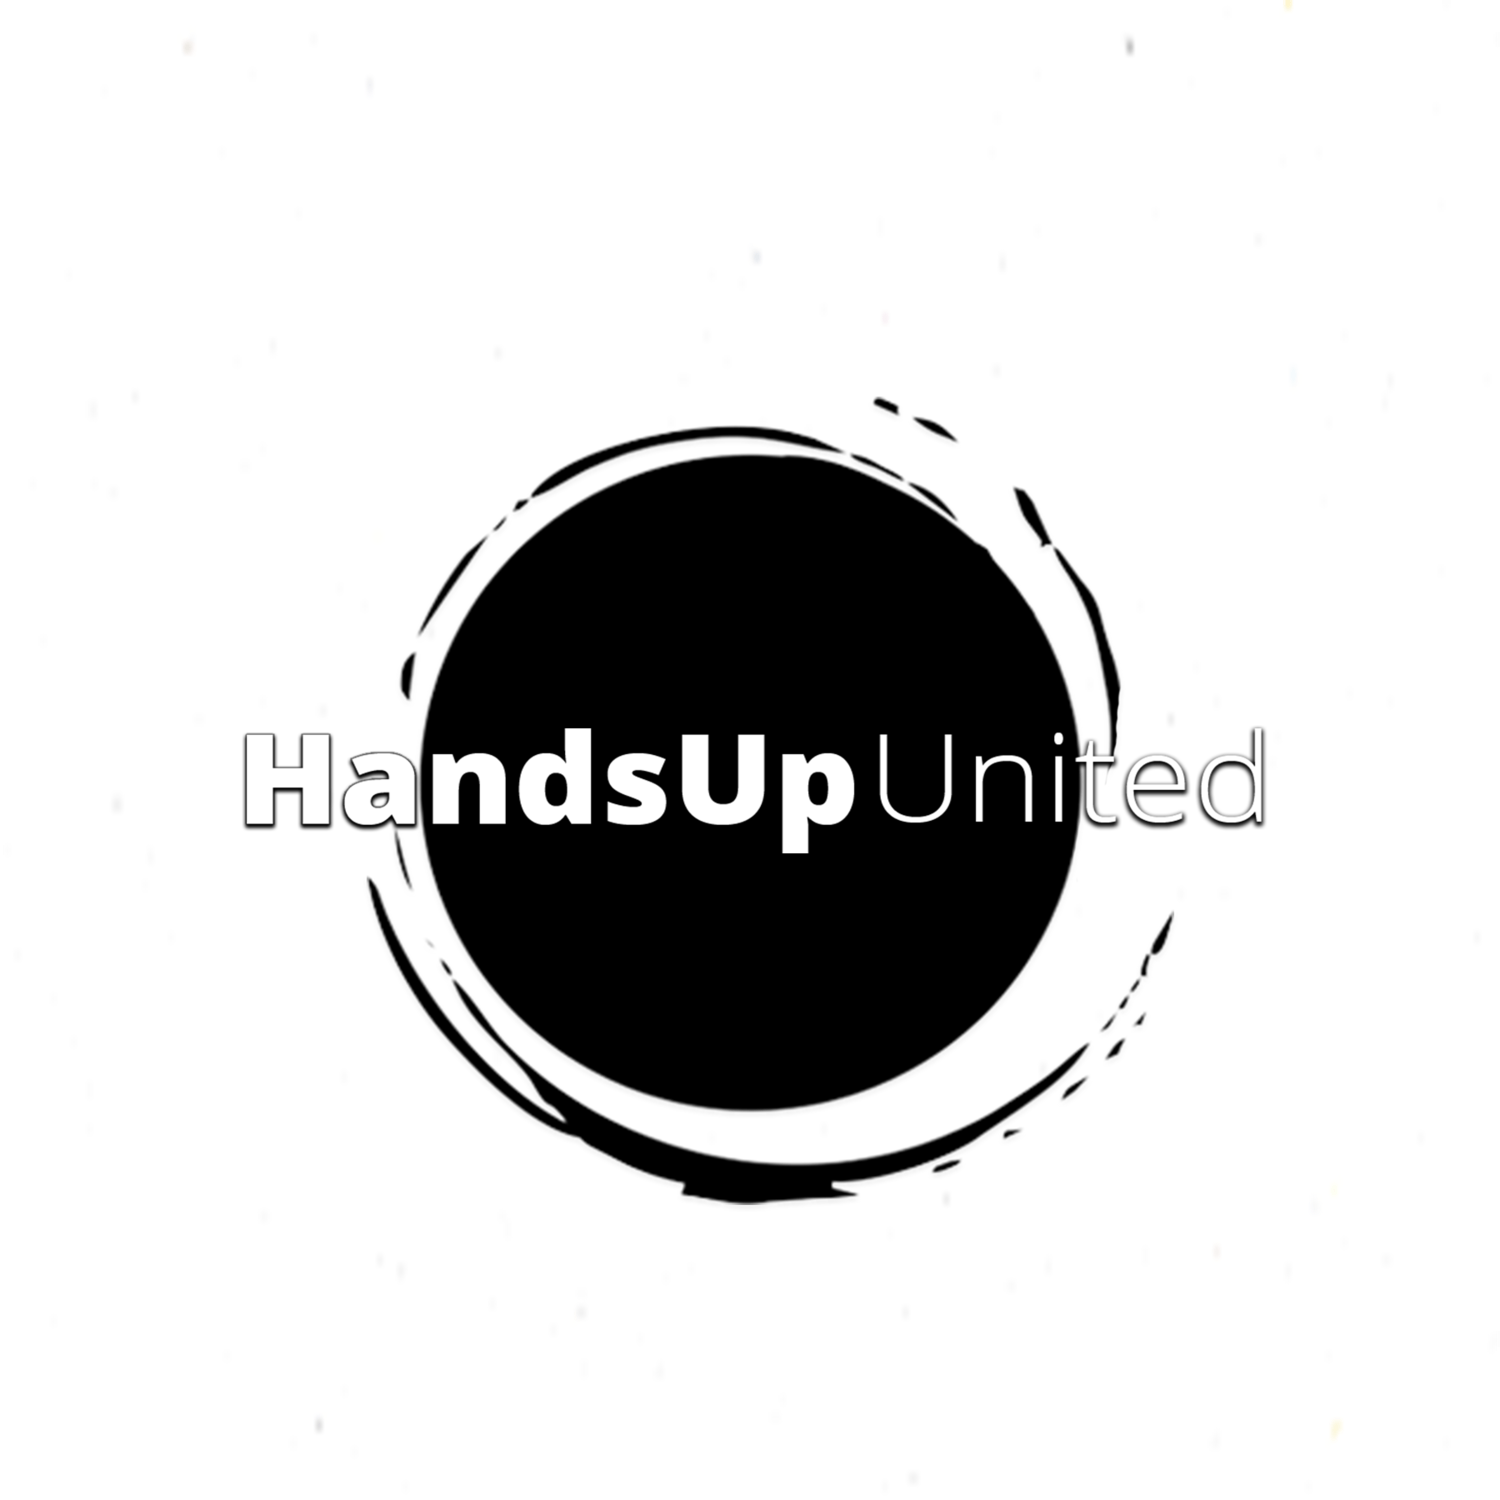 HandsUp Logo - HandsUp United